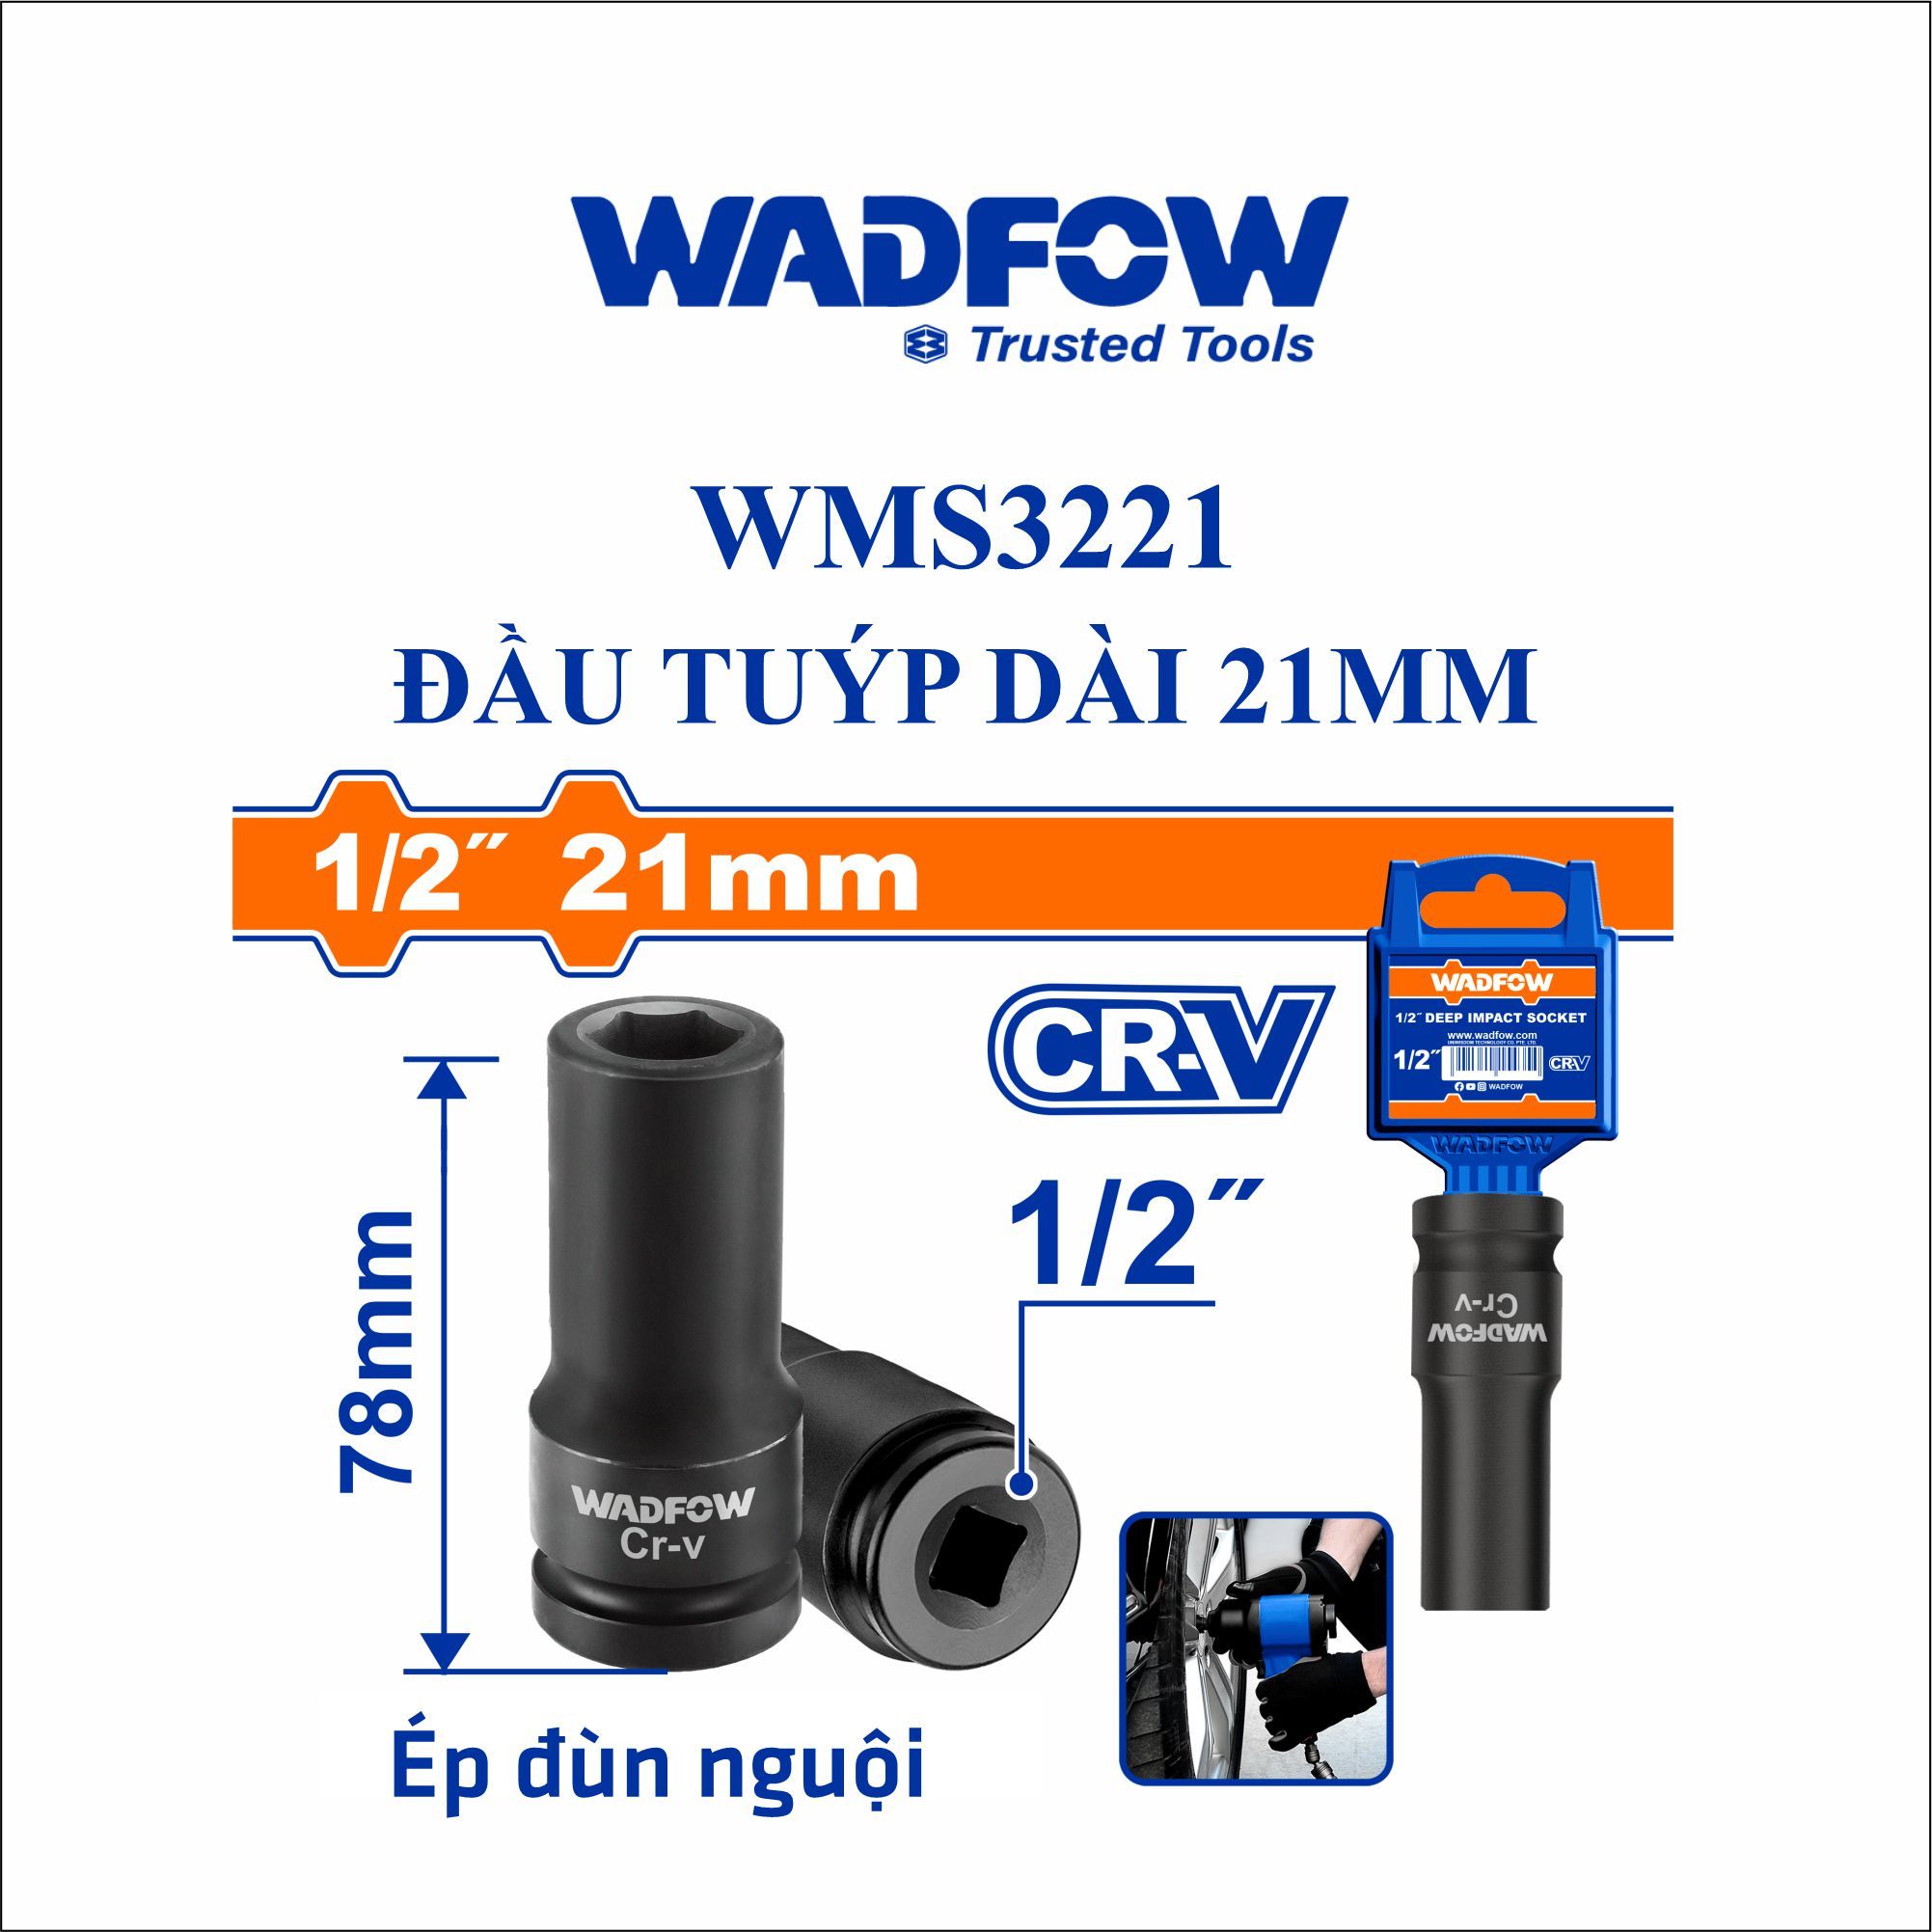  Đầu tuýp dài 21mm WADFOW WMS3221 